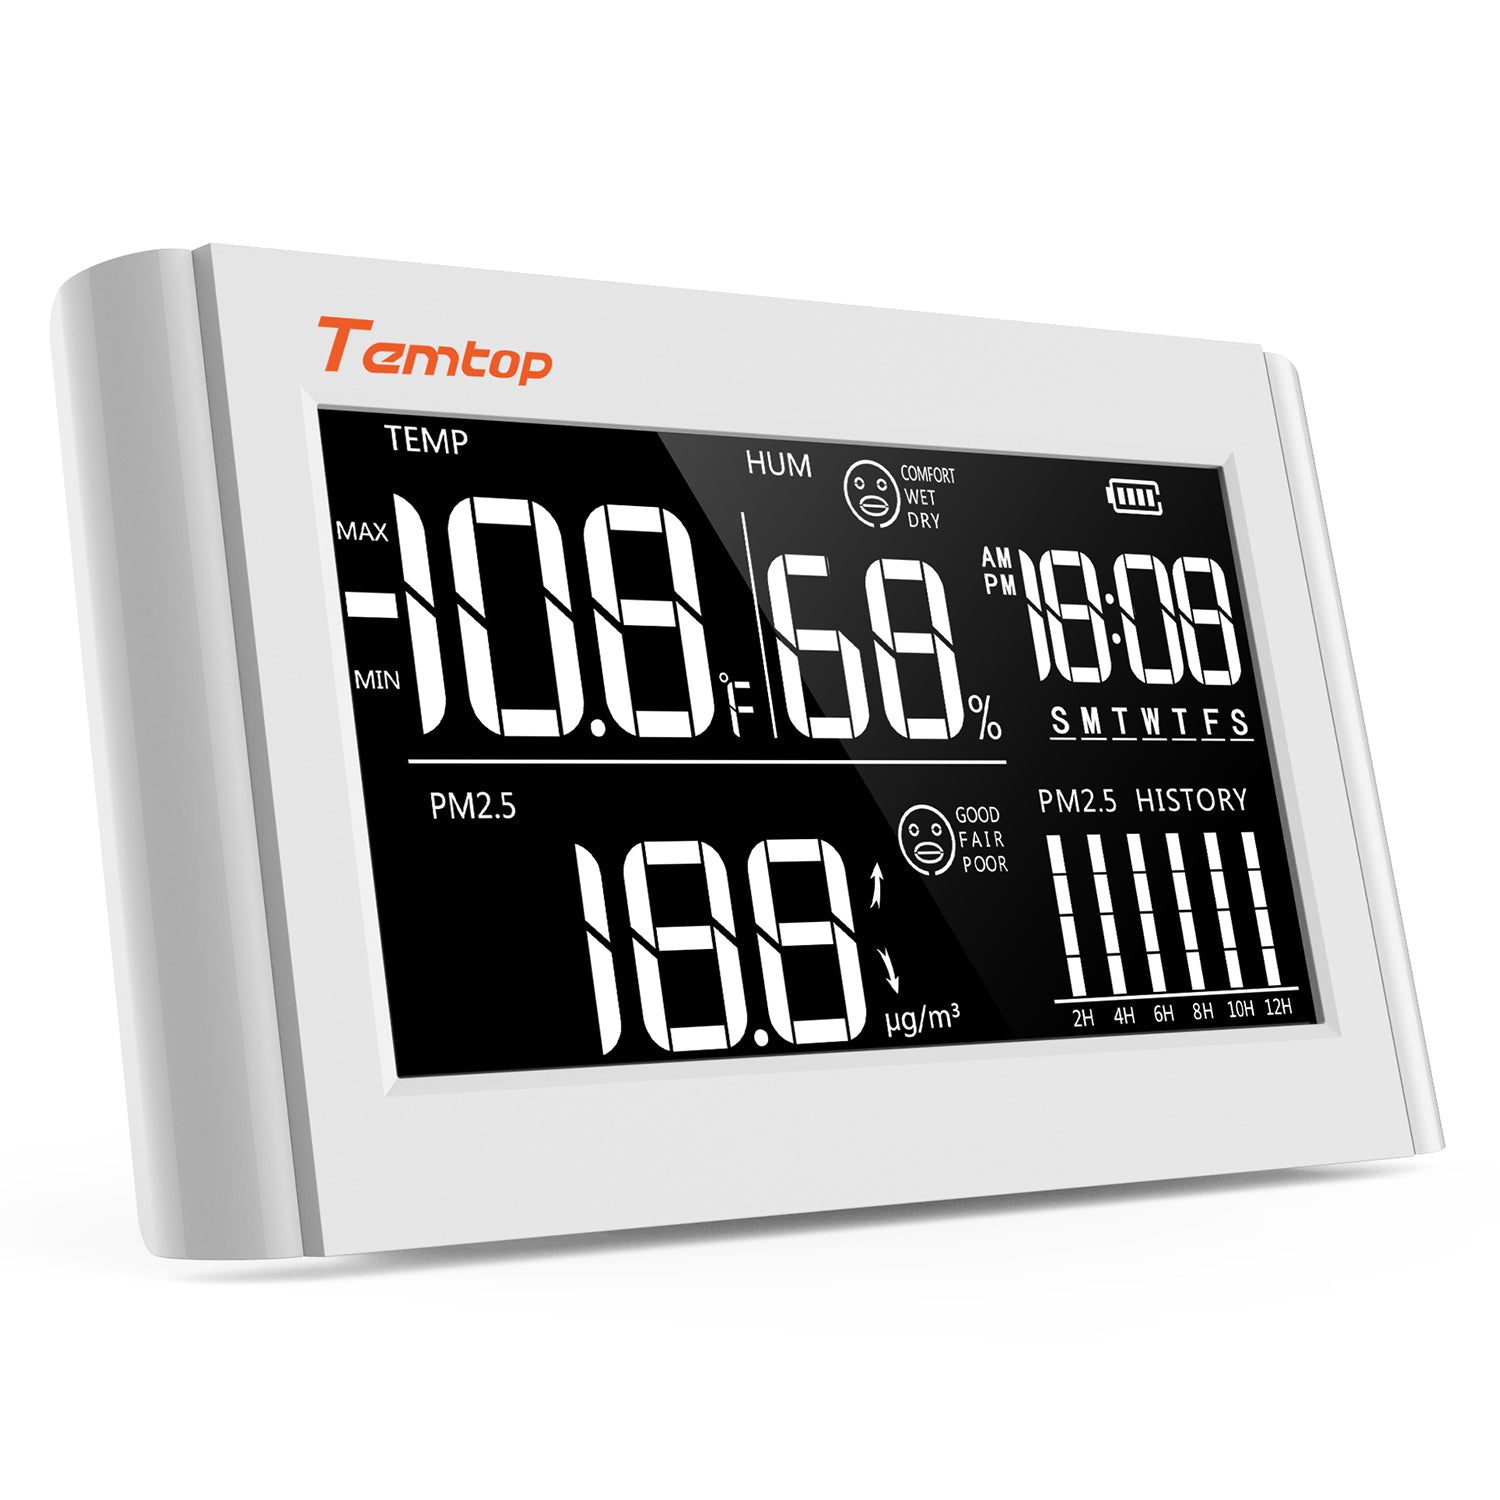 Temtop P20 PM2.5 Luftqualitätsmonitor, professioneller Laser-Partikelsensor-Detektor, Echtzeit-Temperatur- und Luftfeuchtigkeitsanzeige, wiederaufladbarer Akku